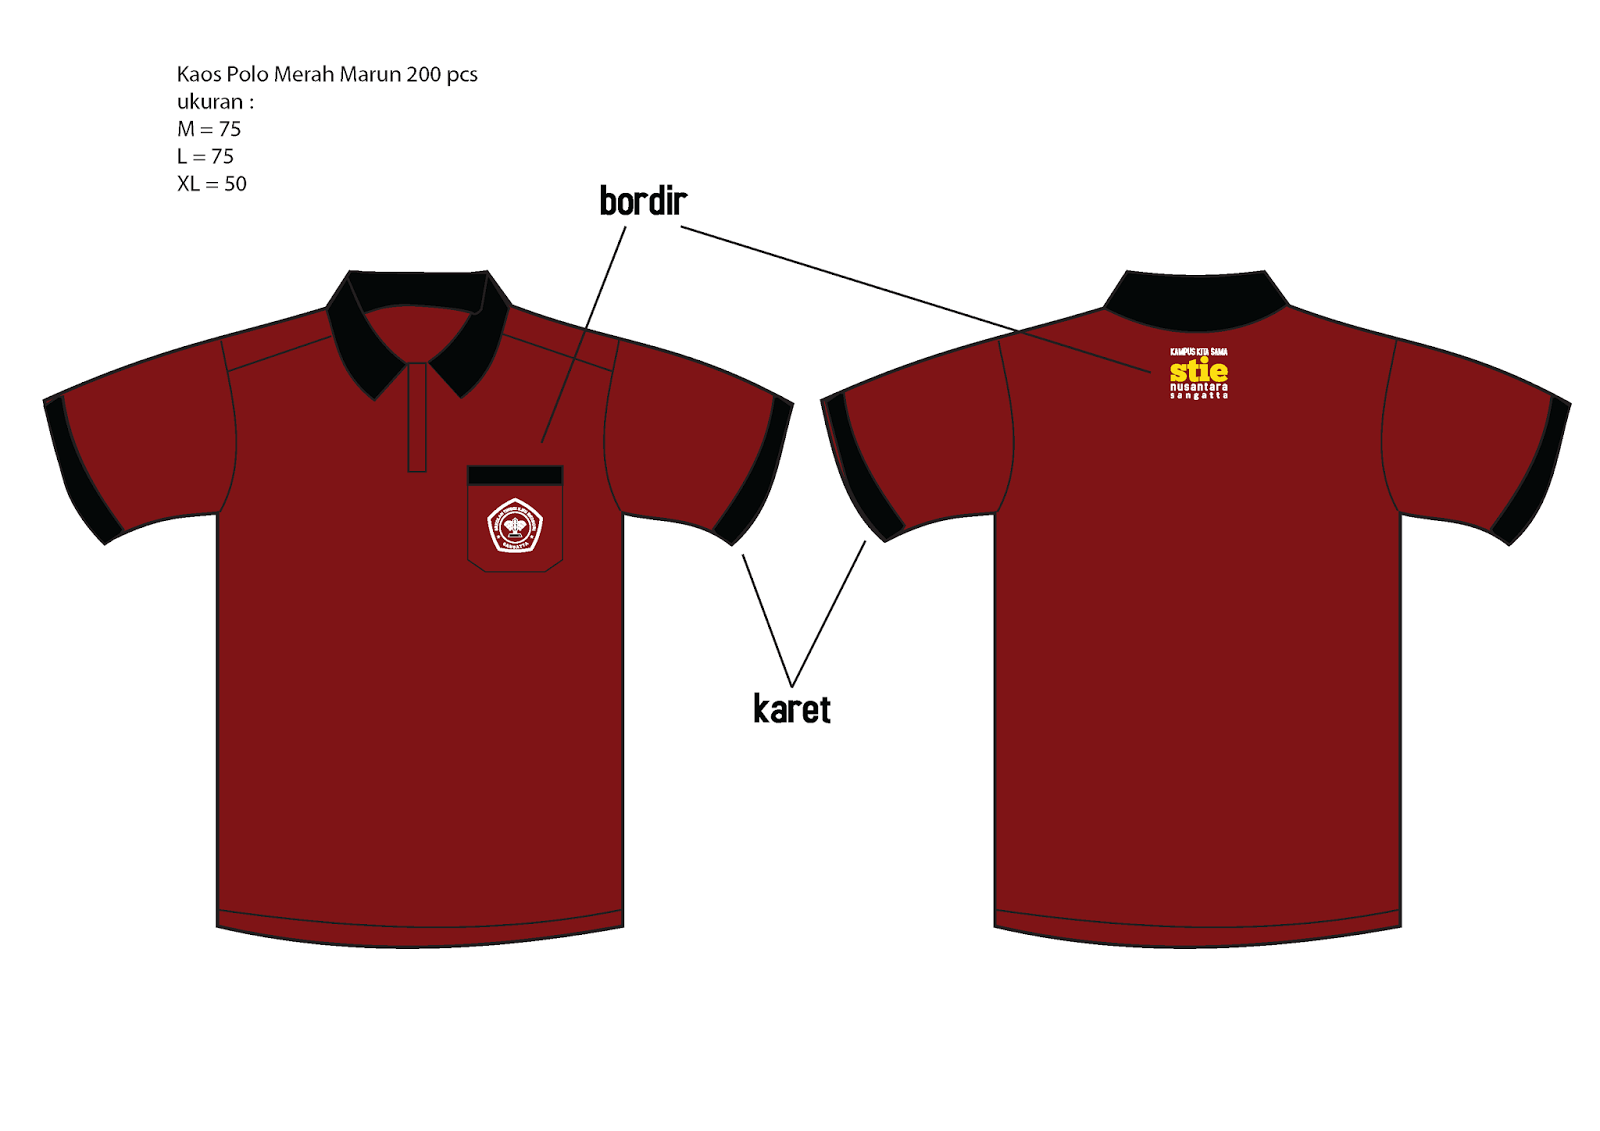 Order Kaos Polo Merah Marun ~ PERCETAKAN MURAH DI BANDUNG